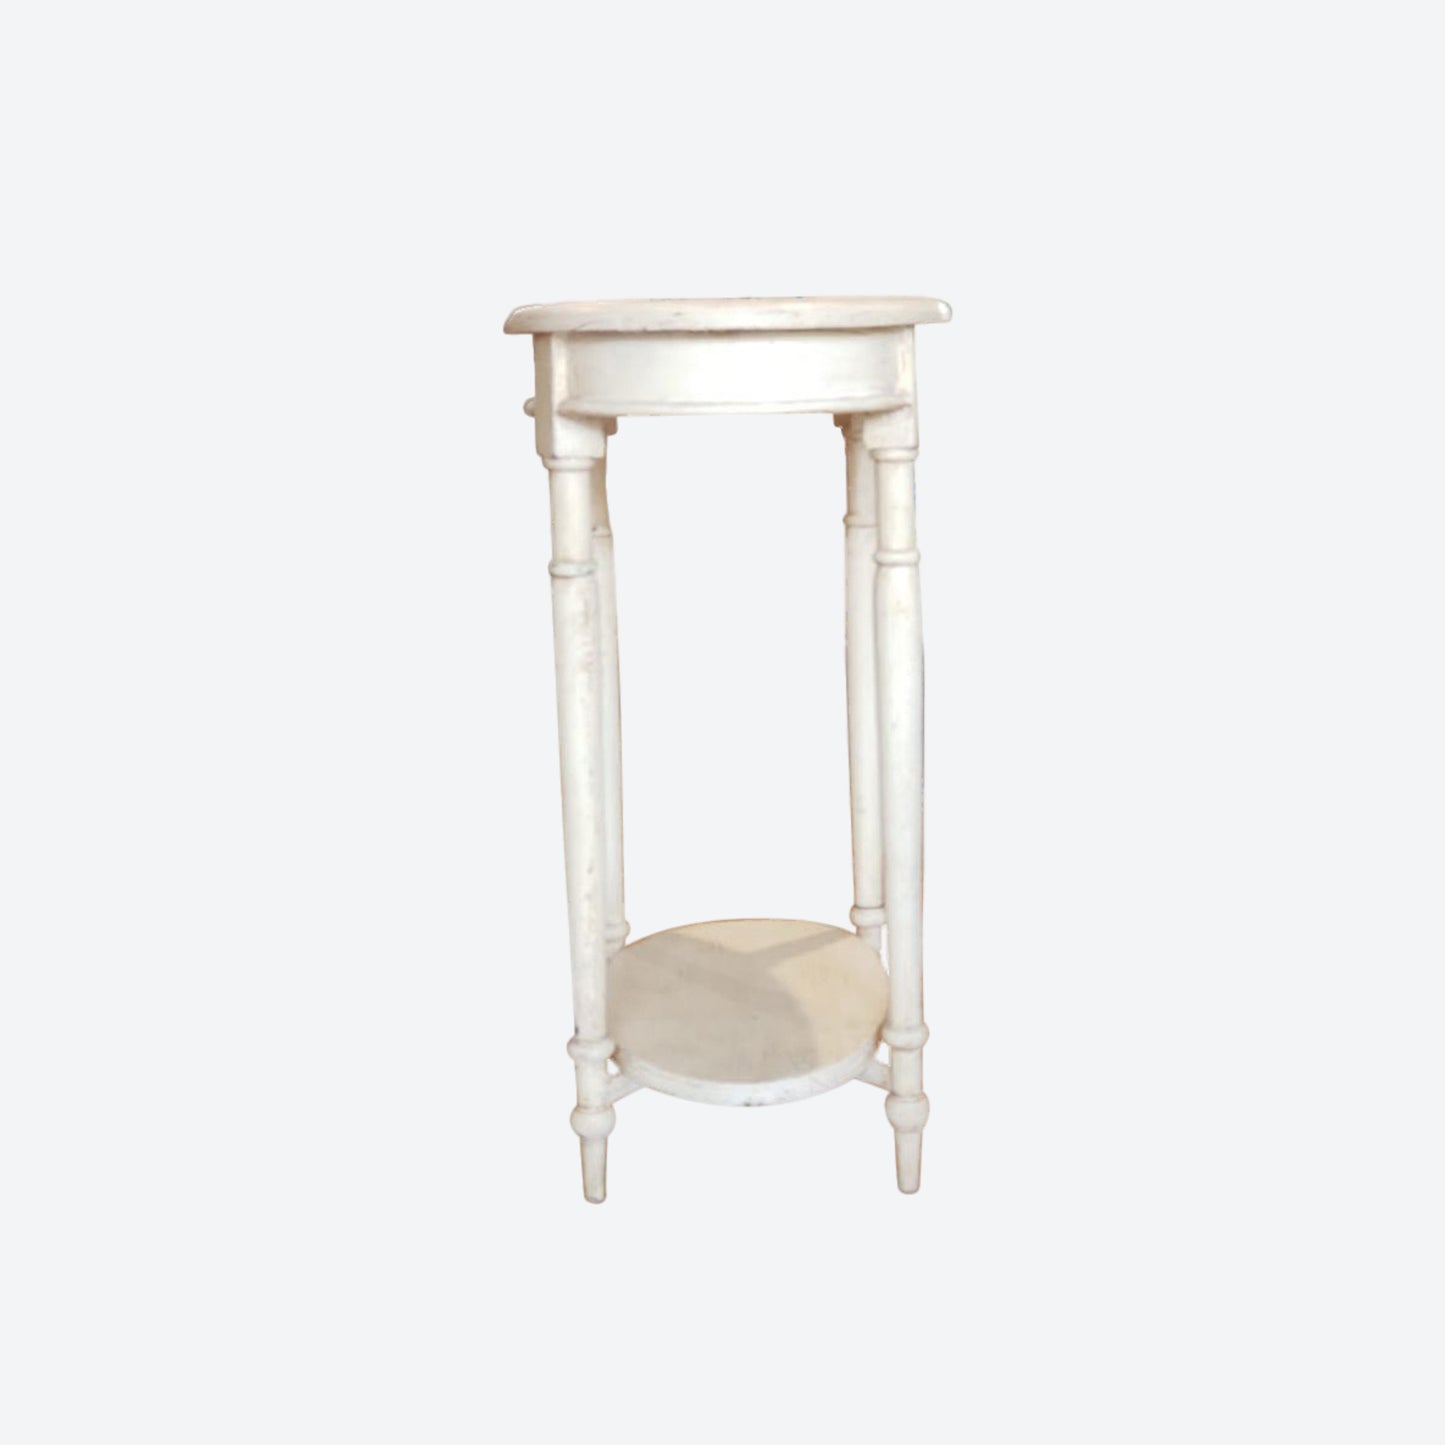 Round Tabletop Cedar Wood Rustic Table [ White] -SK- SKU 1181